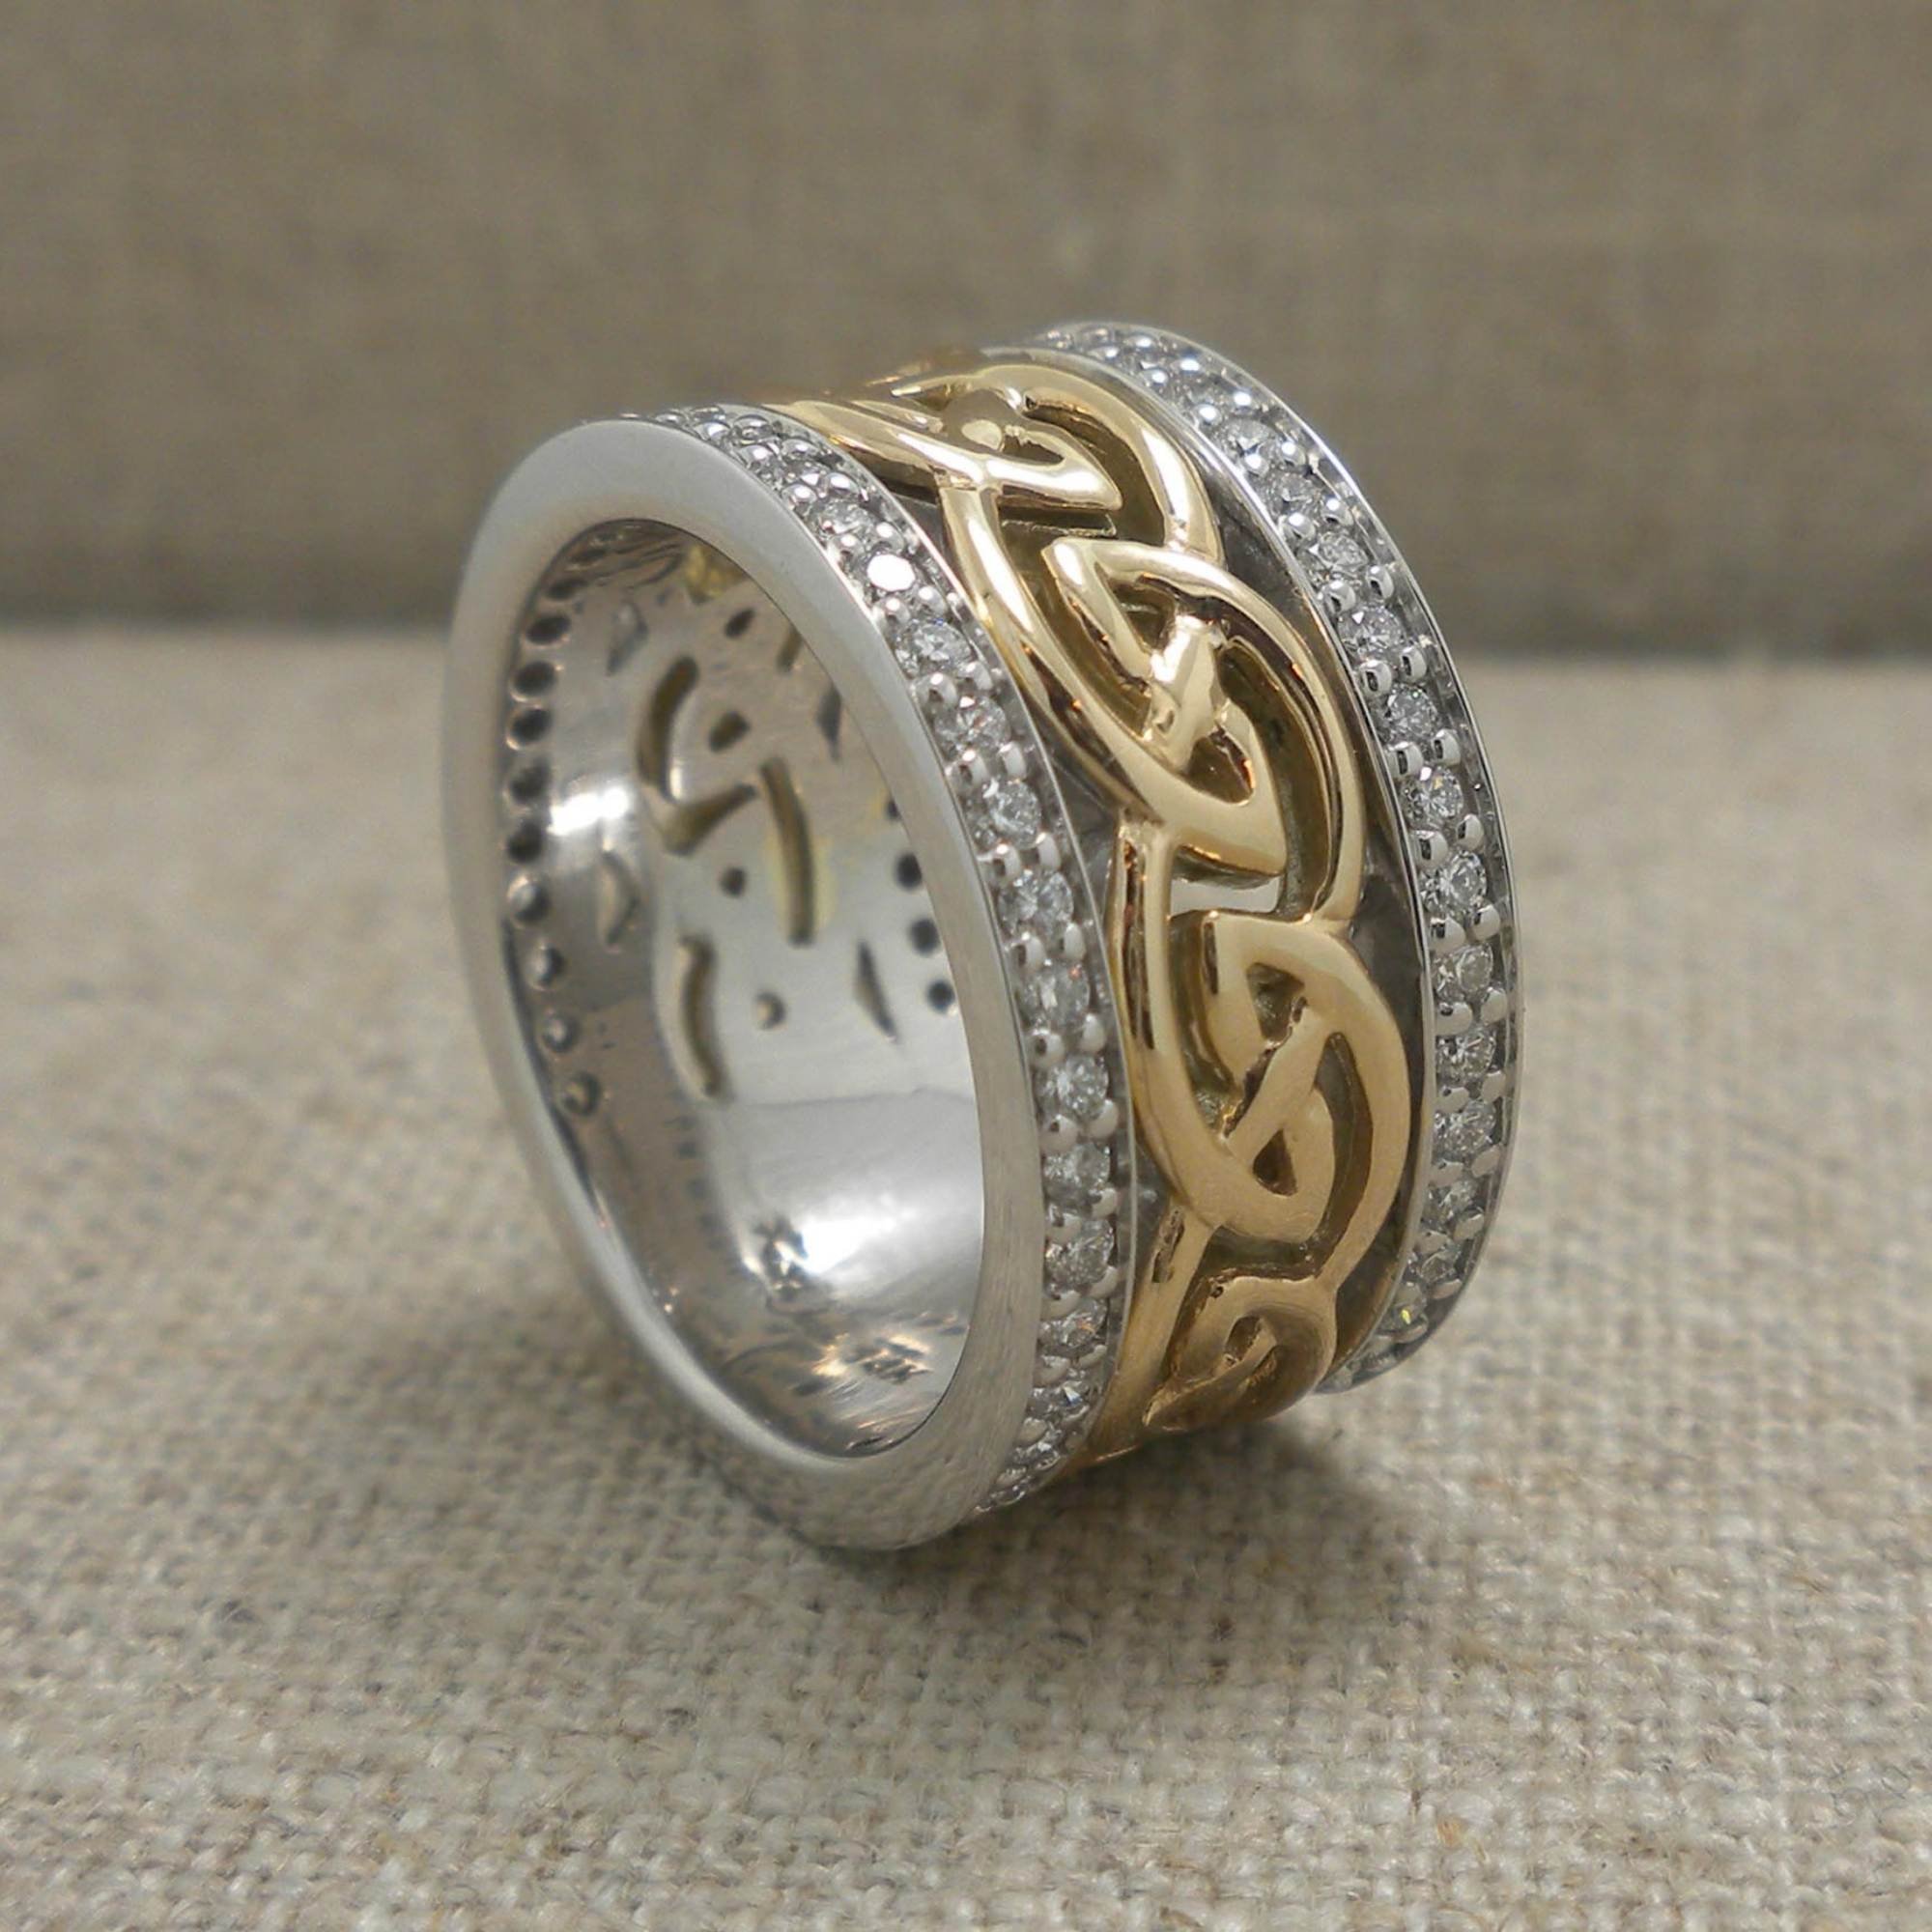 04-PRX8103-custom-wedding-ring.jpg